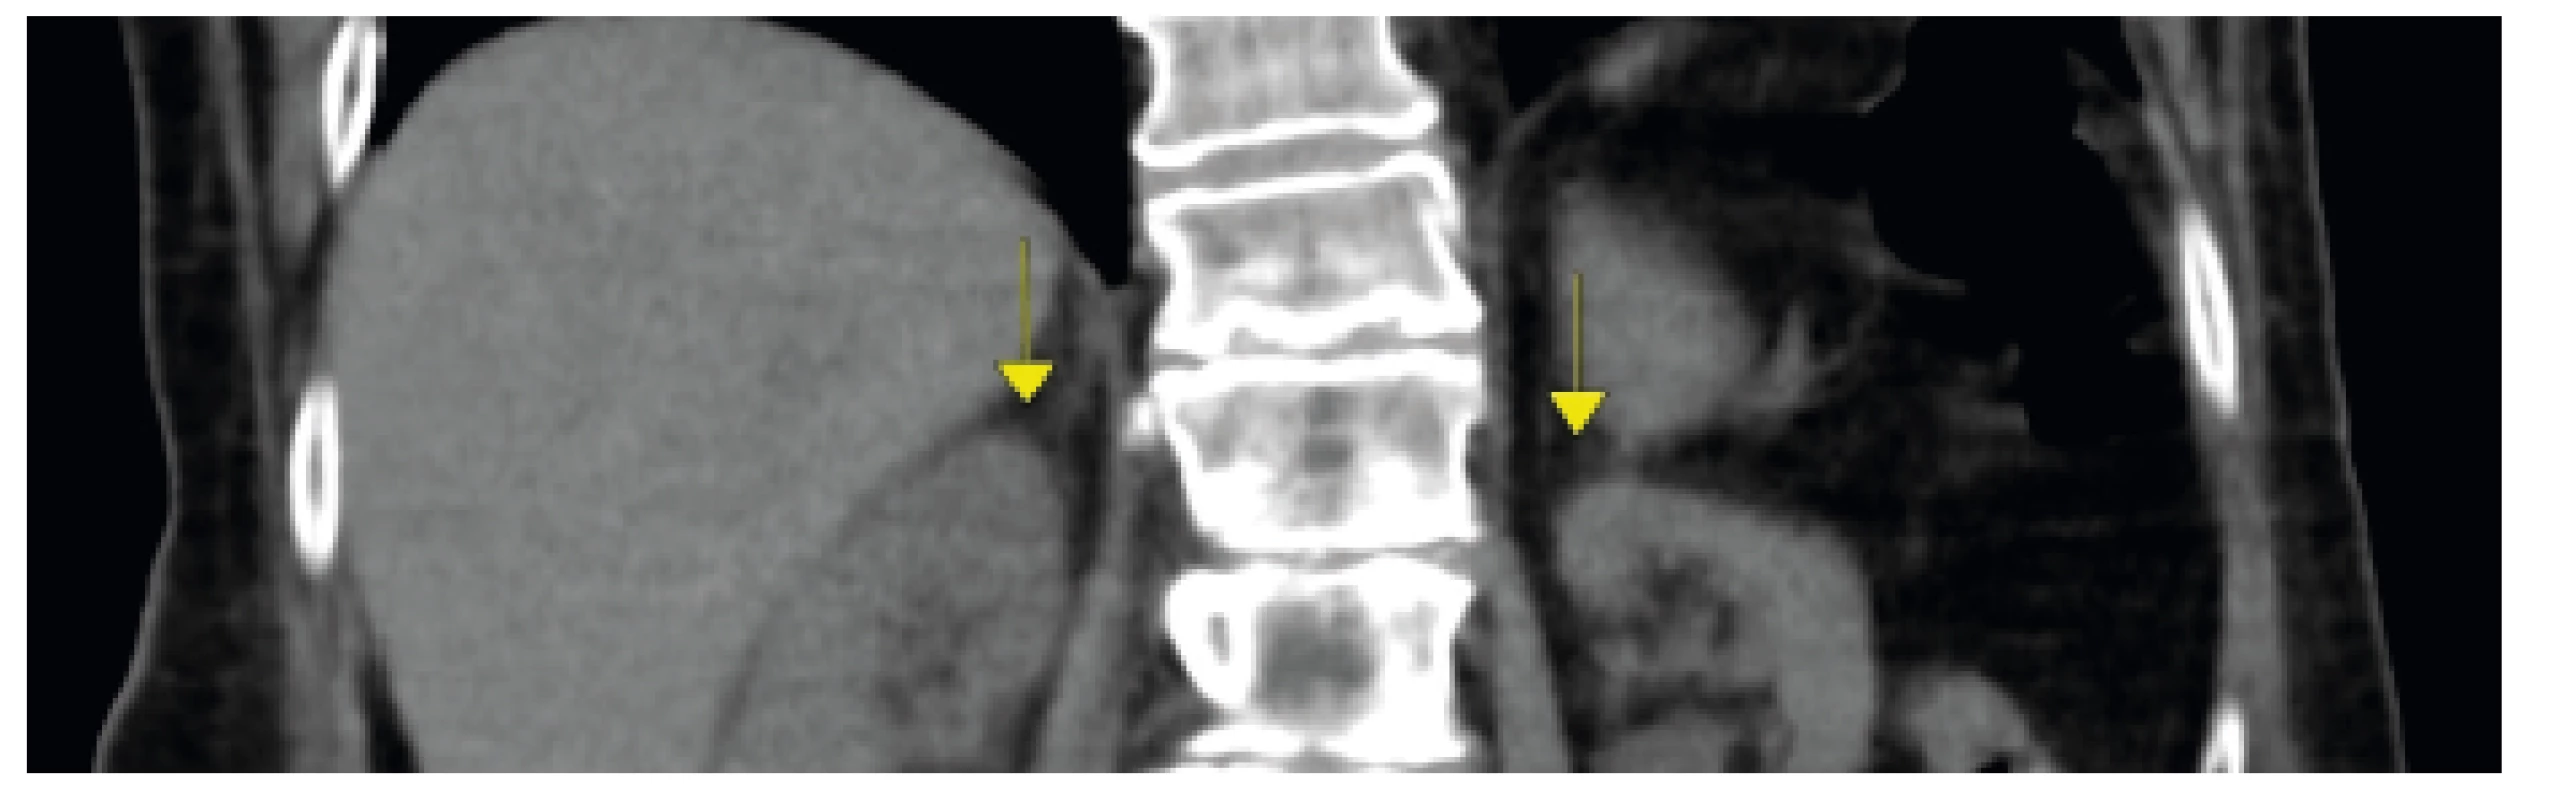 CT břicha, zobrazena atrofie nadledvin, vedlejší nález
atrofický pankreas. Zdroj: Radiologická klinika FN Brno